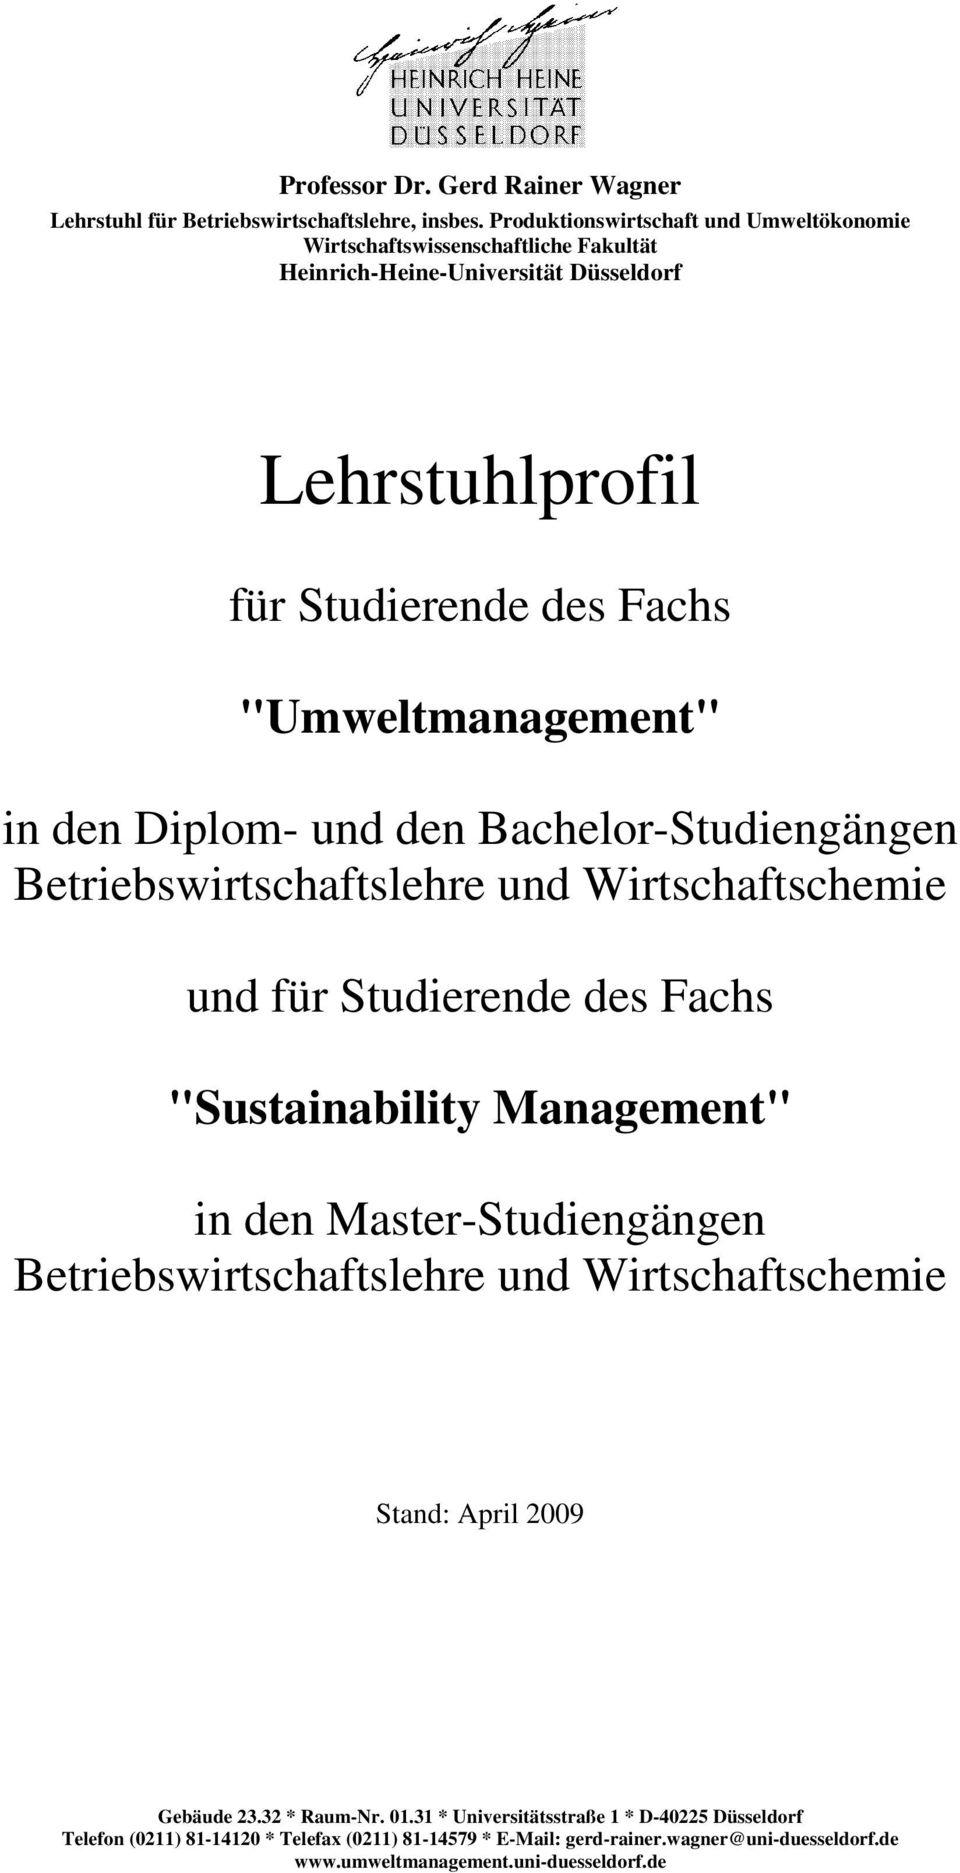 Fachs "Umweltmanagement" in den Diplom- und den Bachelor-Studiengängen und für Studierende des Fachs "Sustainability Management" in den